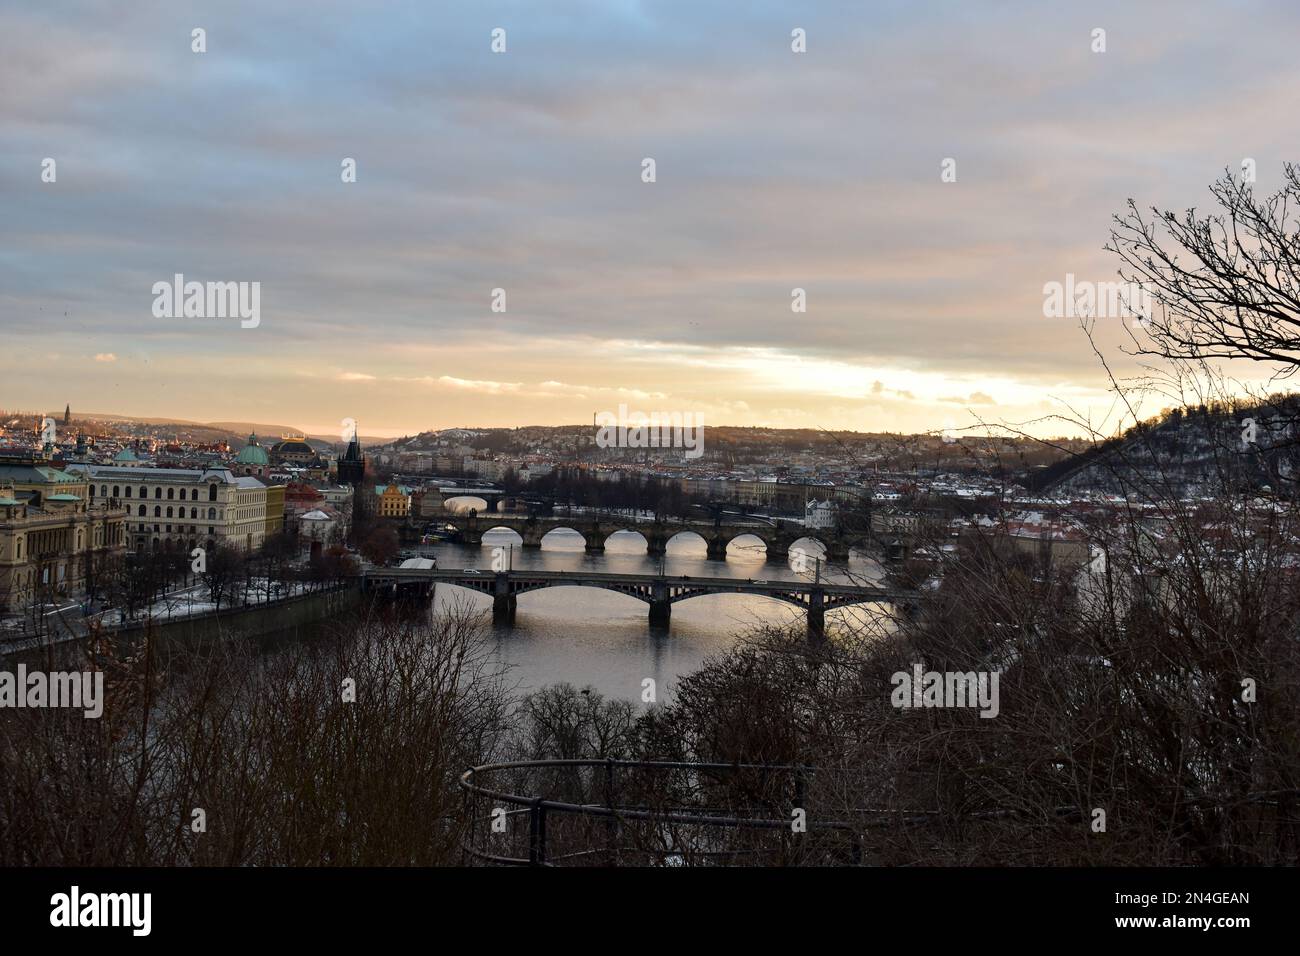 Sept ponts de Prague. Belle vue sur Prague bridge at Dusk de Letna Park. Tourné à l'heure bleue de l'Europe voyage, les visites touristiques et le tourisme. Banque D'Images